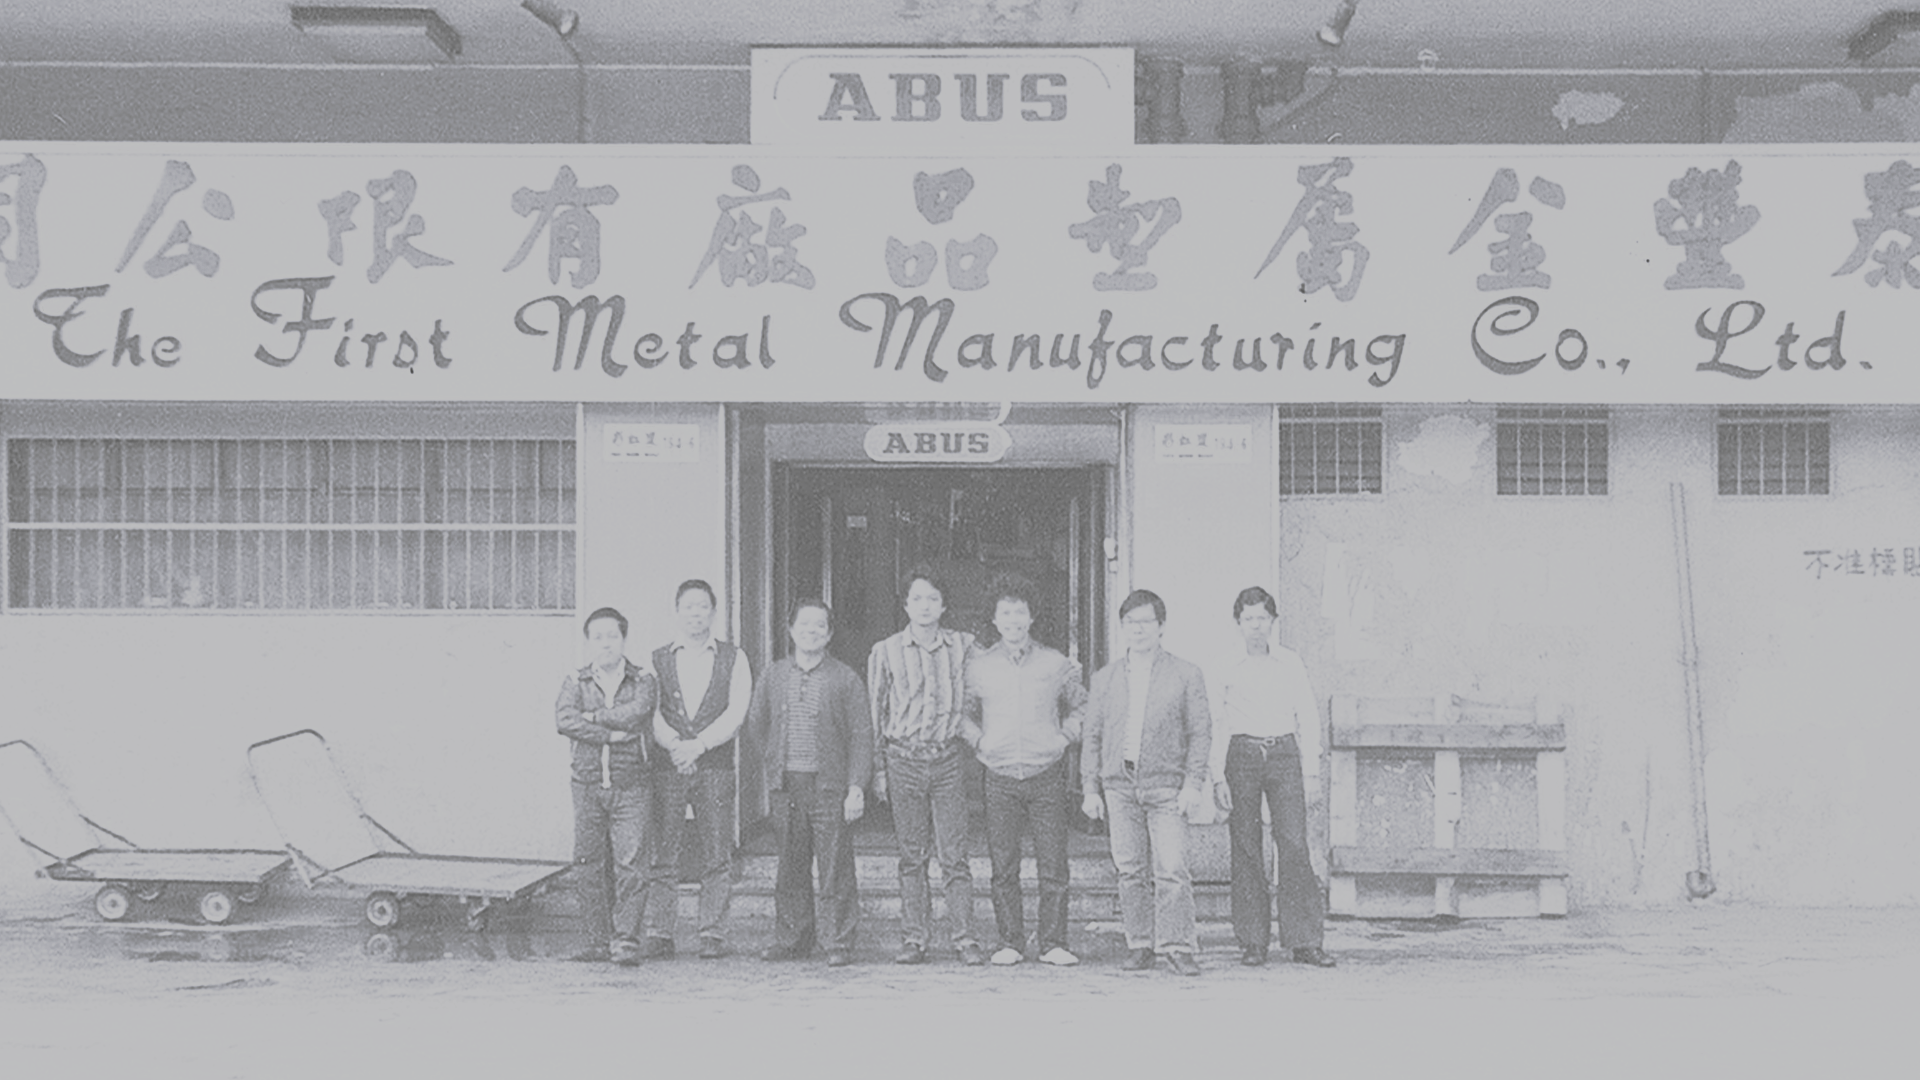 Kilku międzynarodowych producentów przed azjatyckim sklepem © ABUS